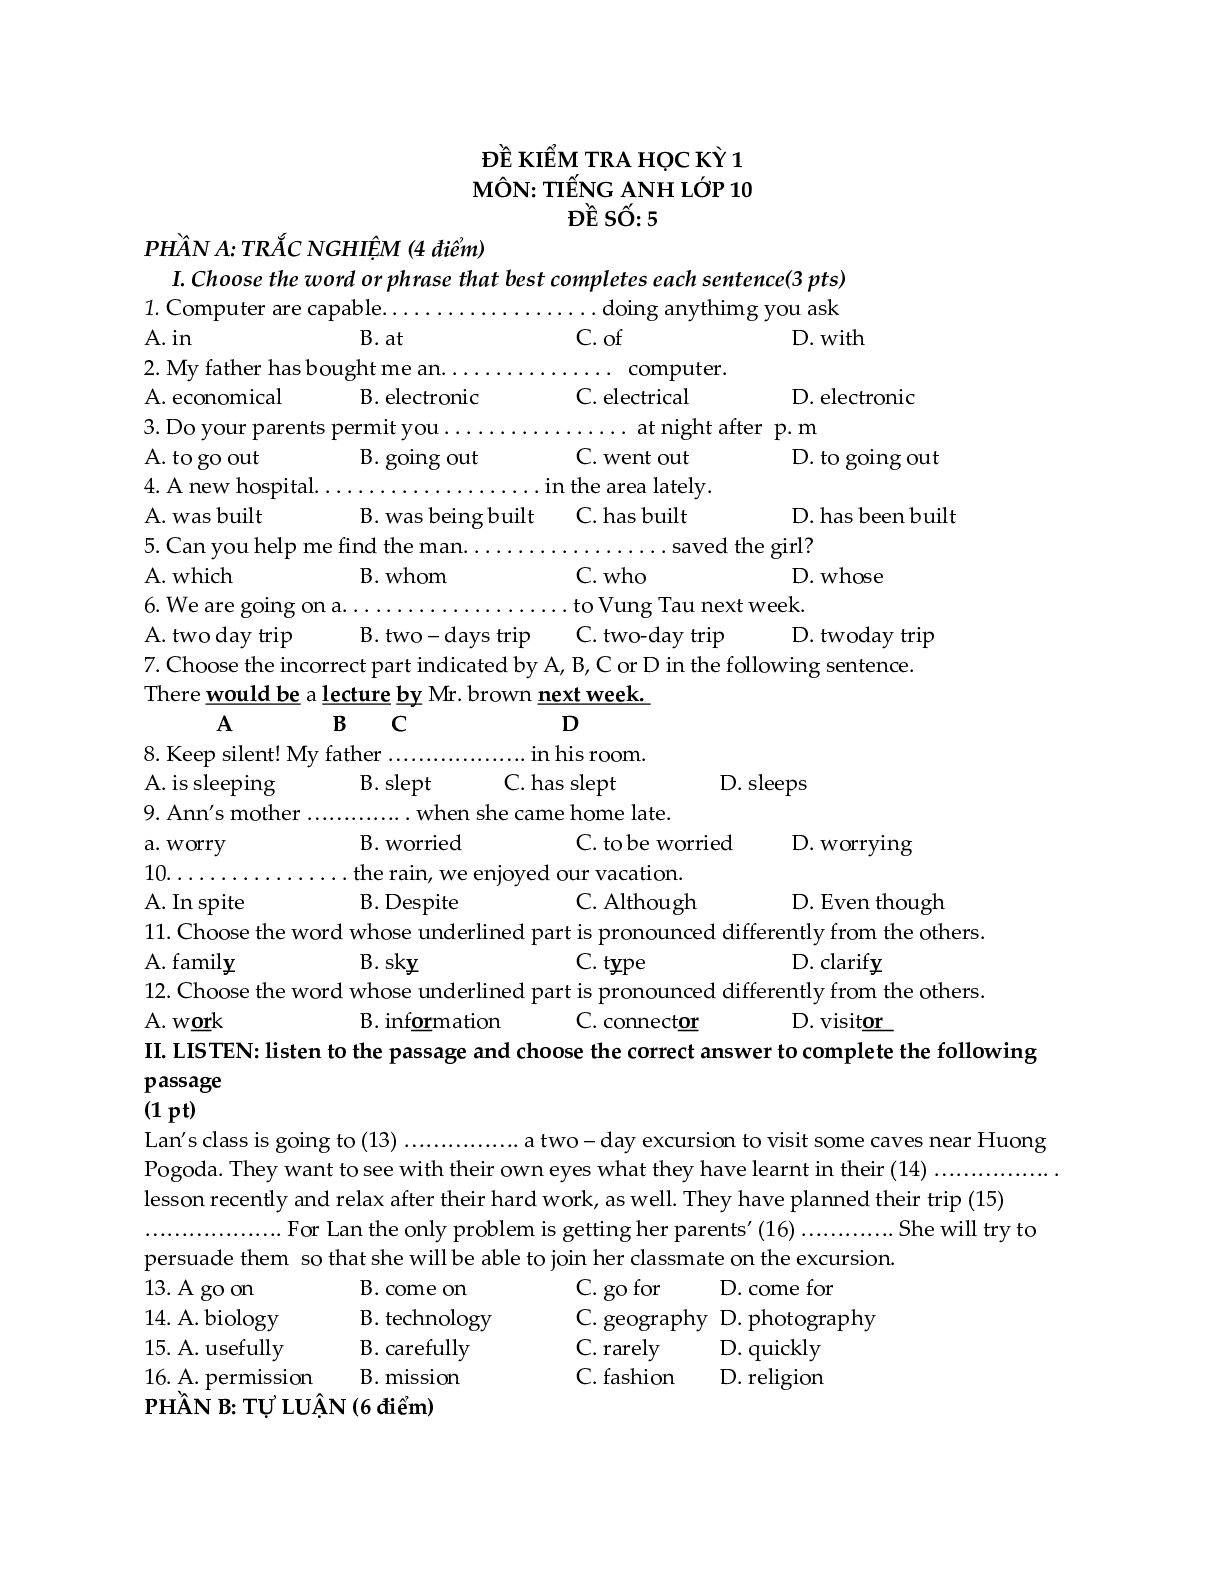 Đề kiểm tra Tiếng Anh 10 học kỳ 1 (có đáp án) (trang 9)